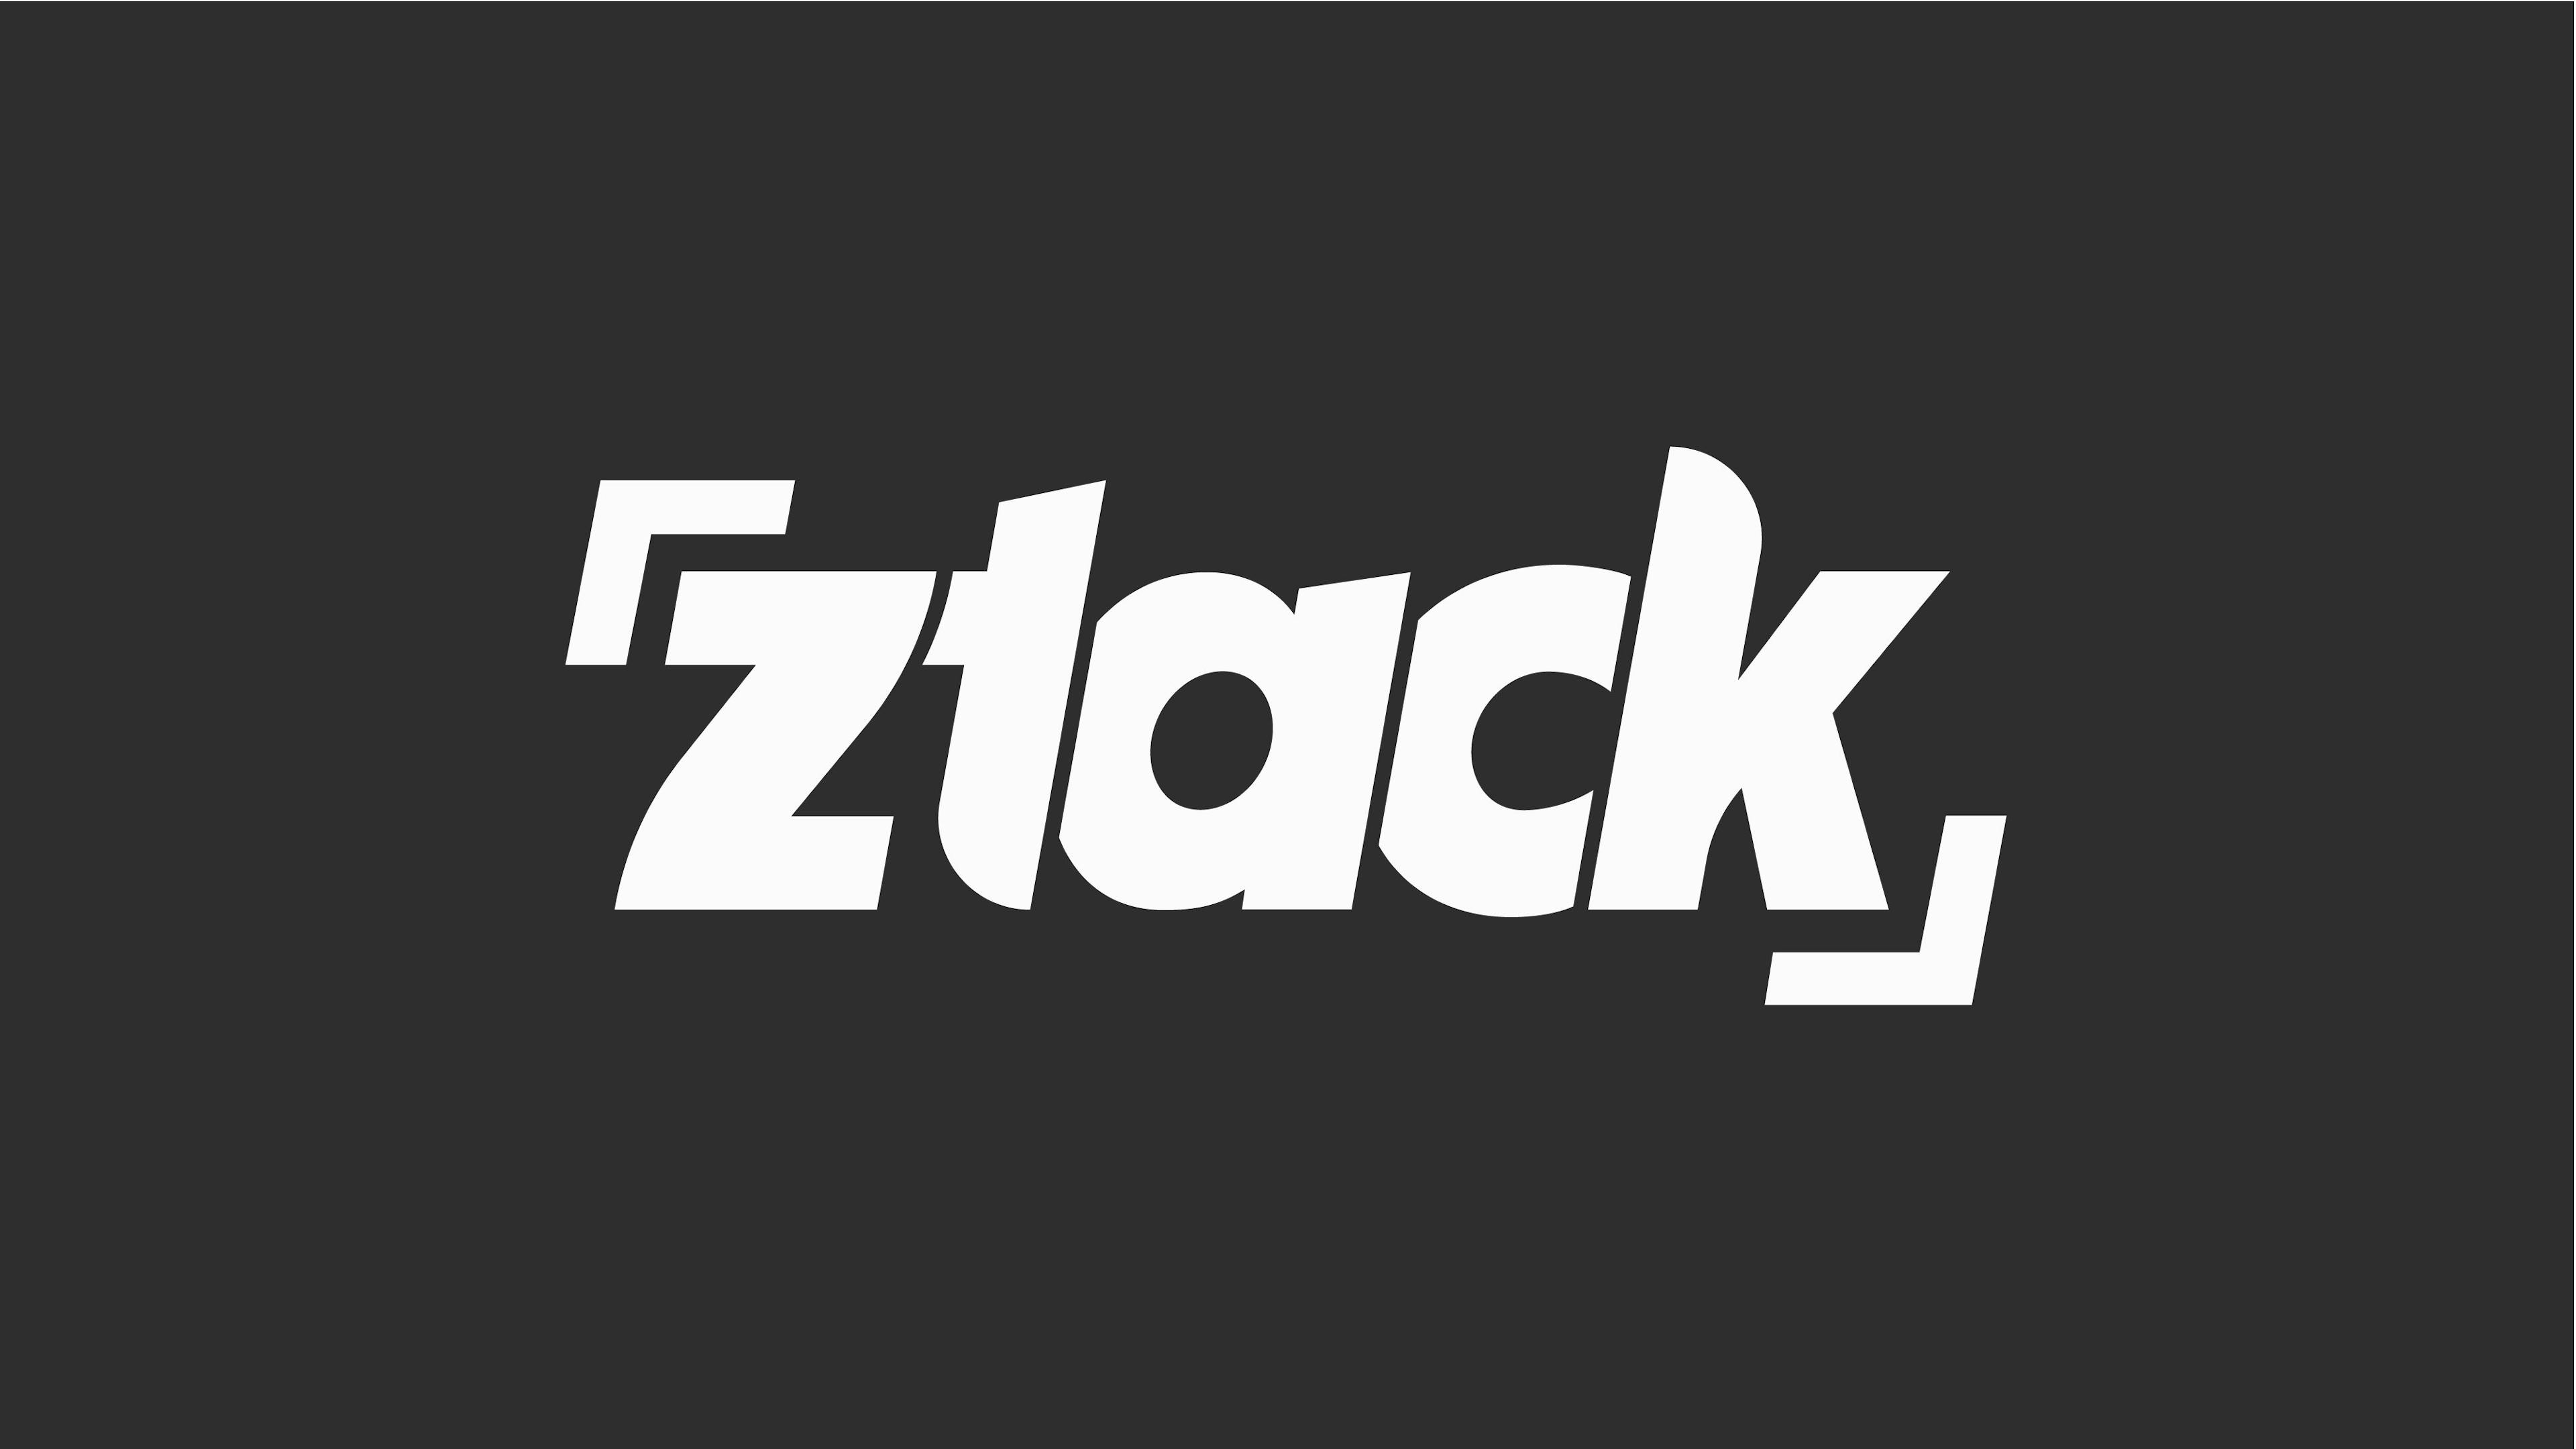  Jongerenplatform ZTACK vernieuwt radioprogrammering en komt met nieuwe podcasts